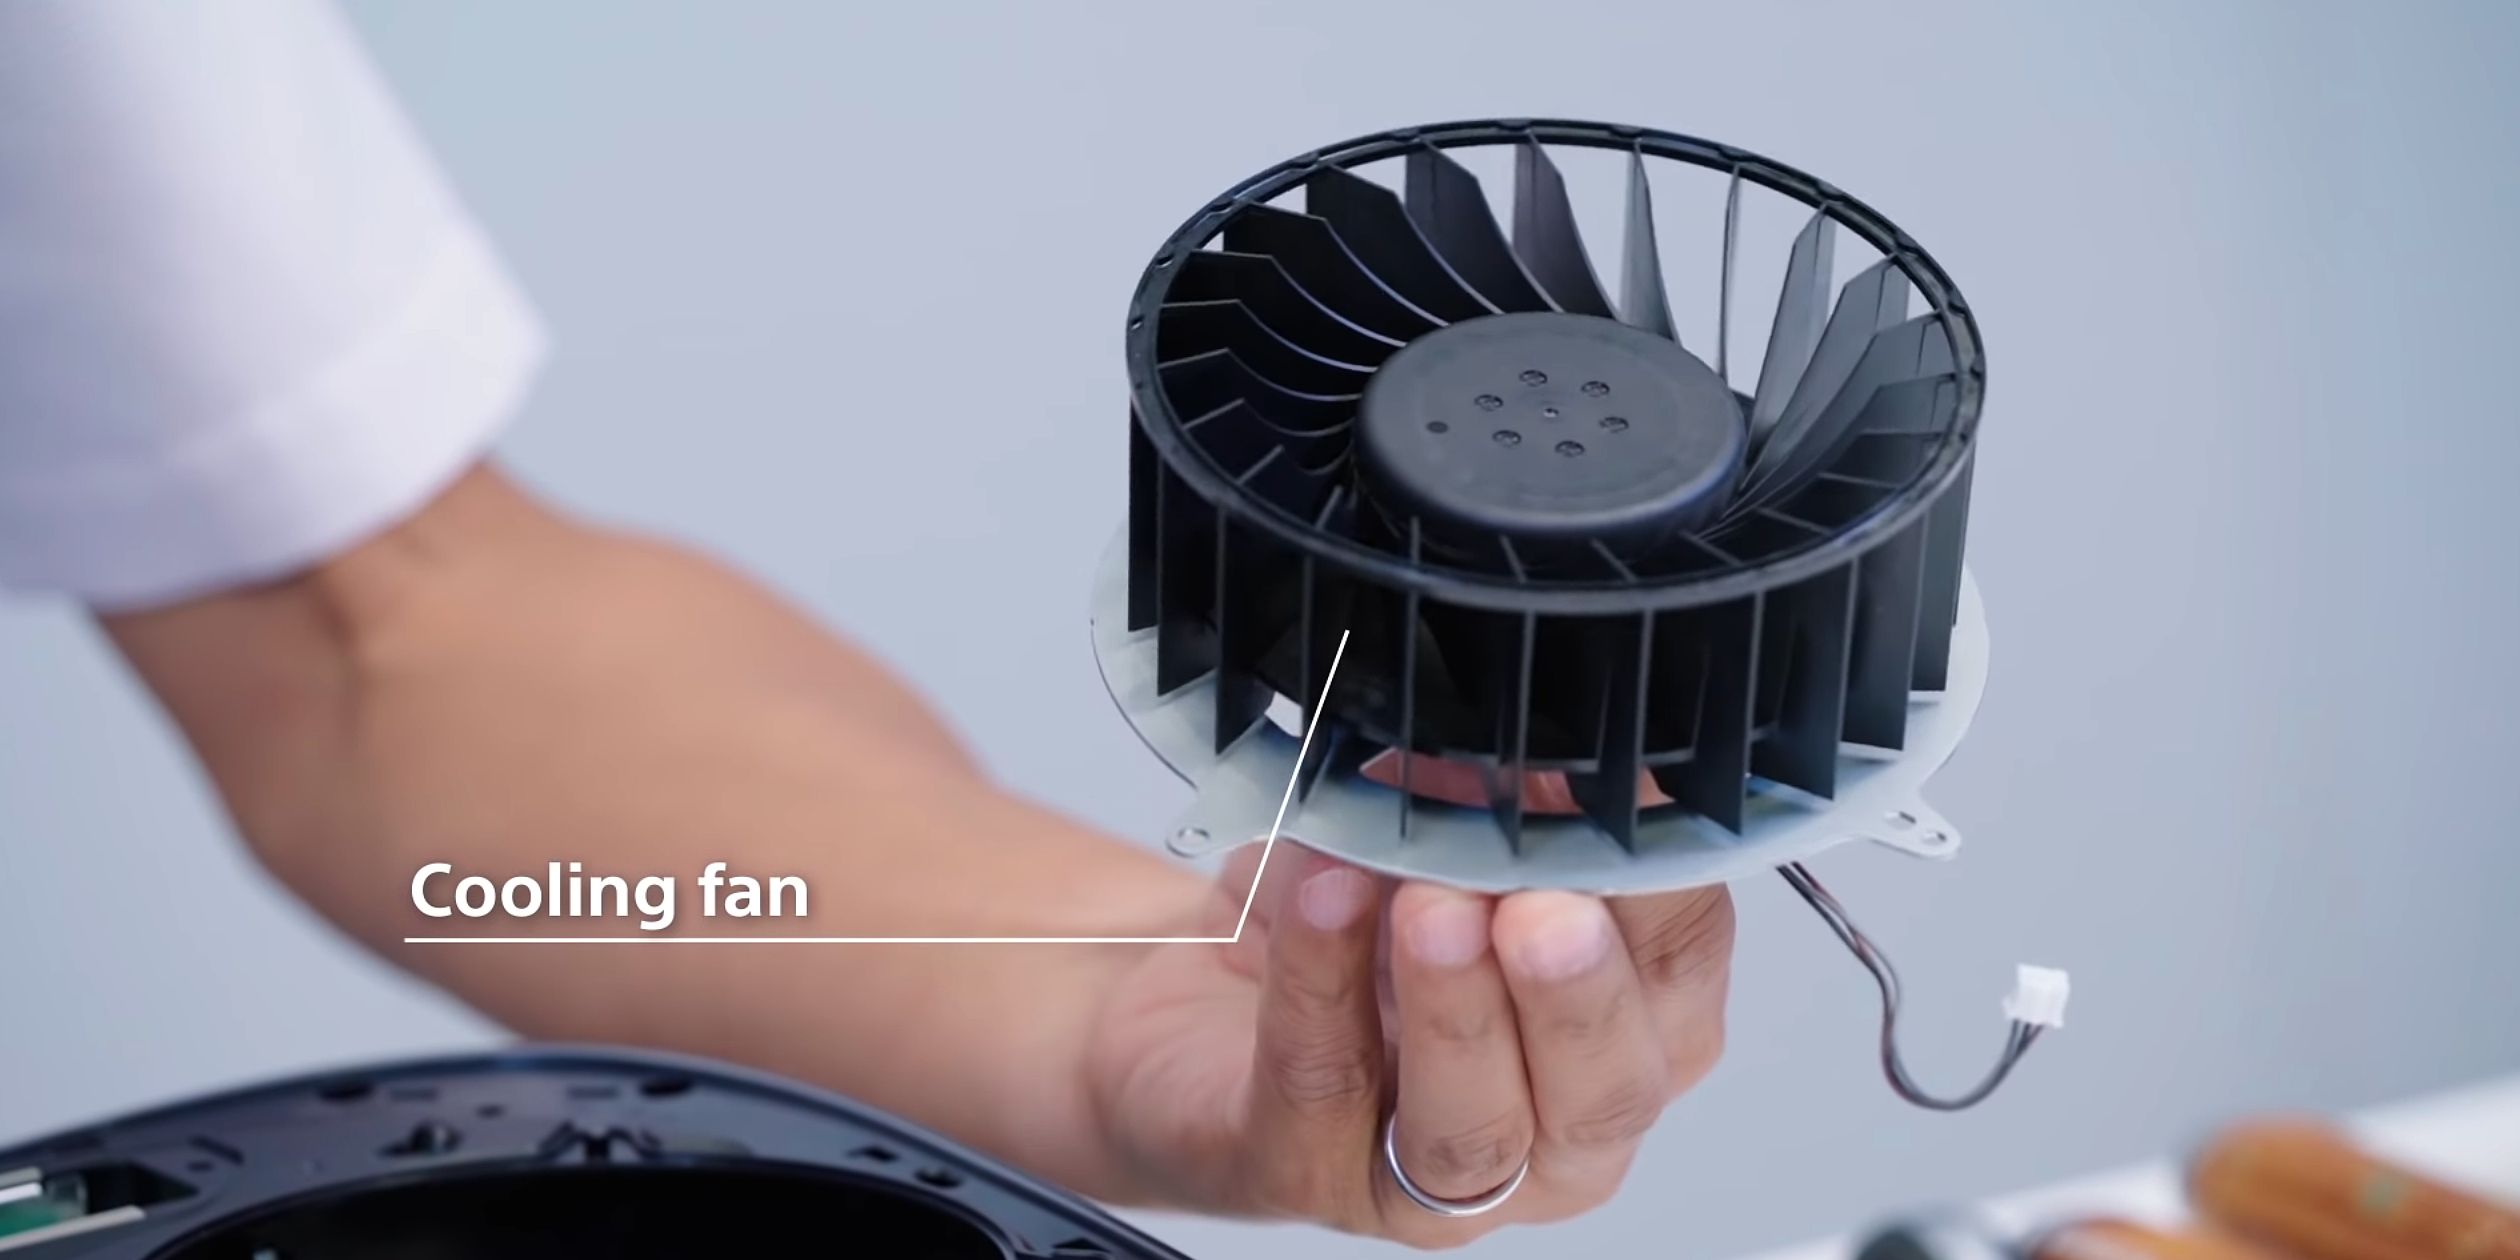 PlayStation 5 Teardown Cooling Fan Performance